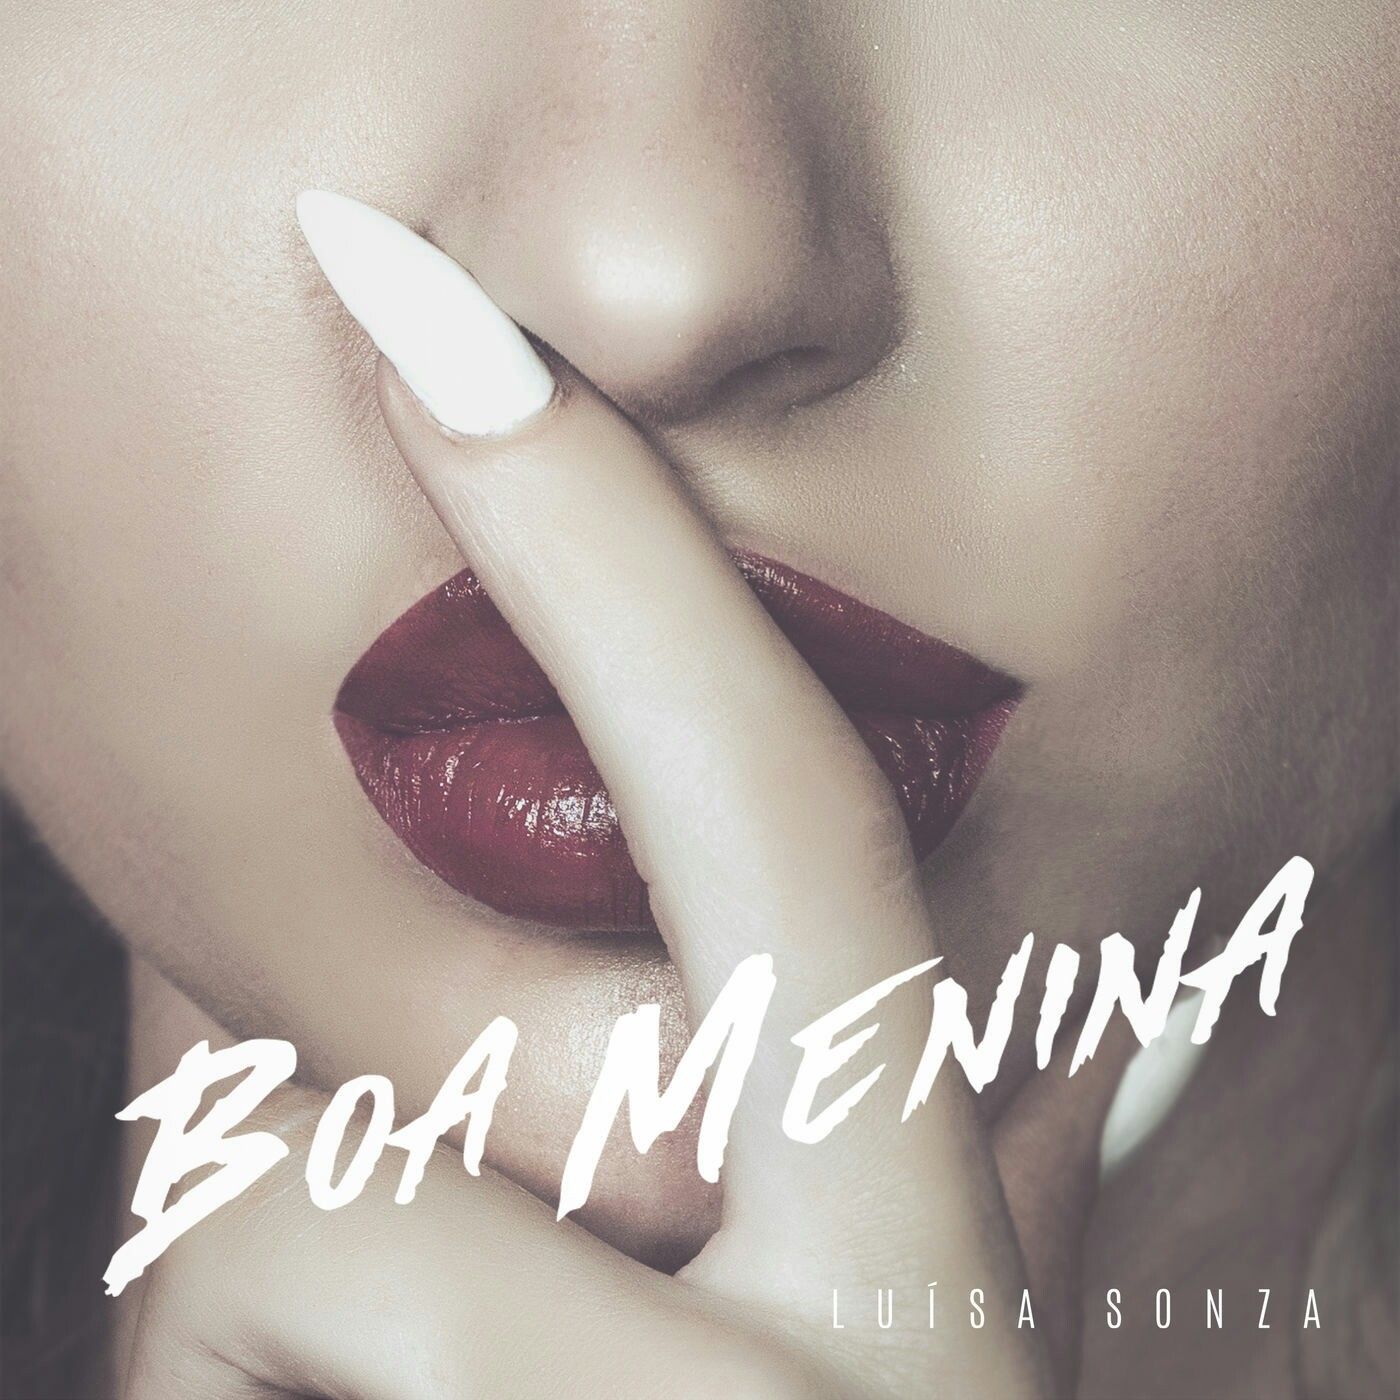 Imagem do álbum Boa Menina do(a) artista Luísa Sonza